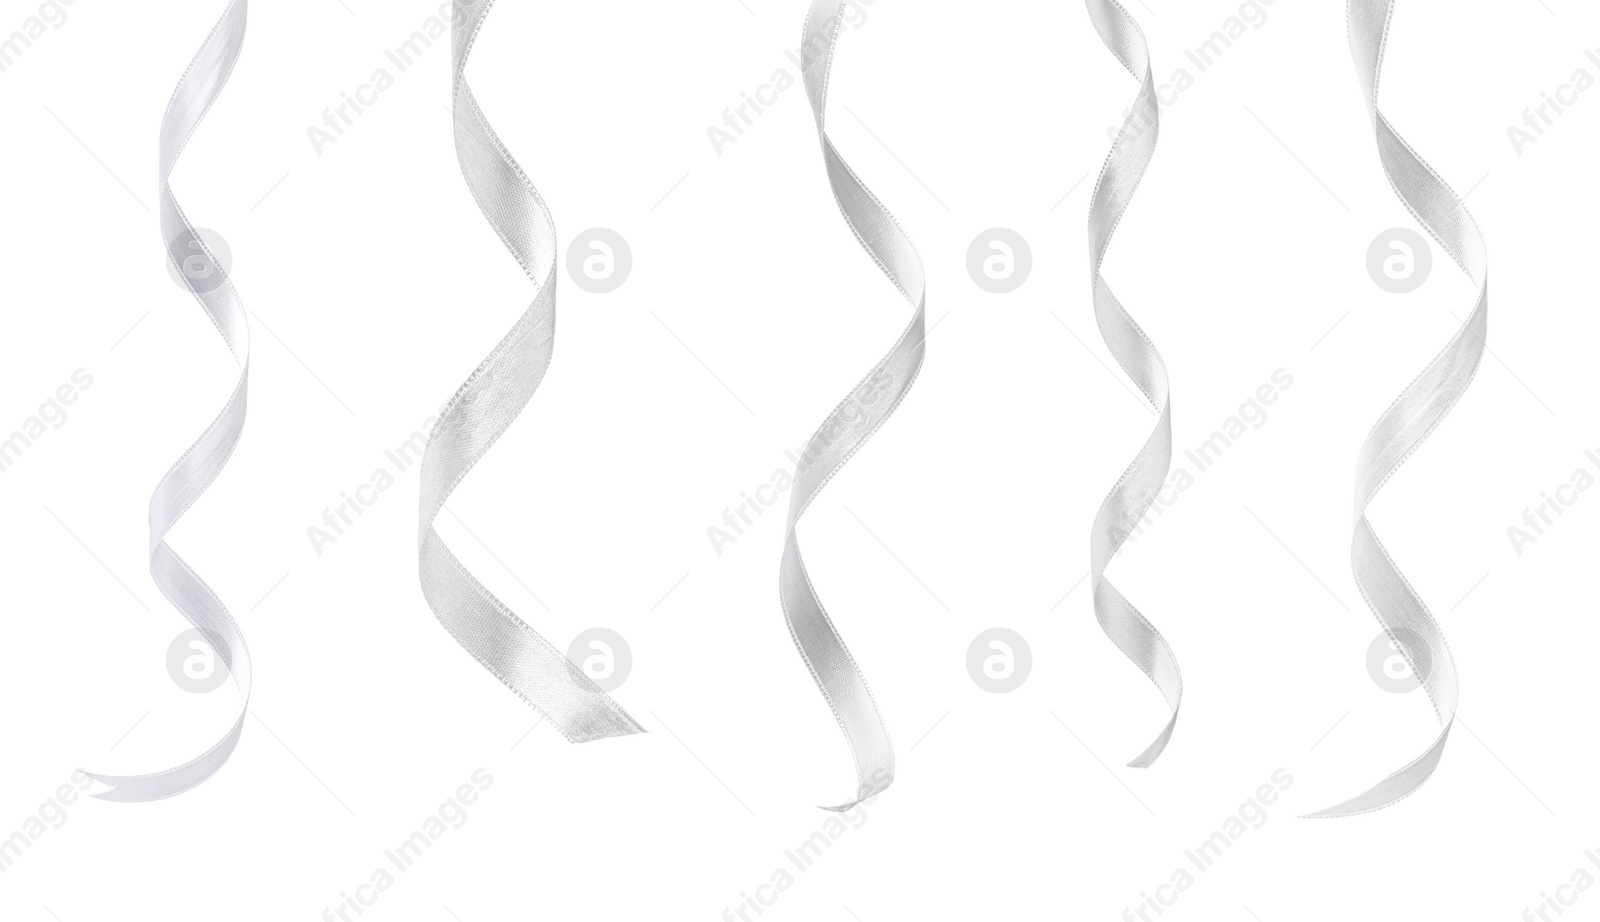 Image of White satin ribbons isolated on white, set